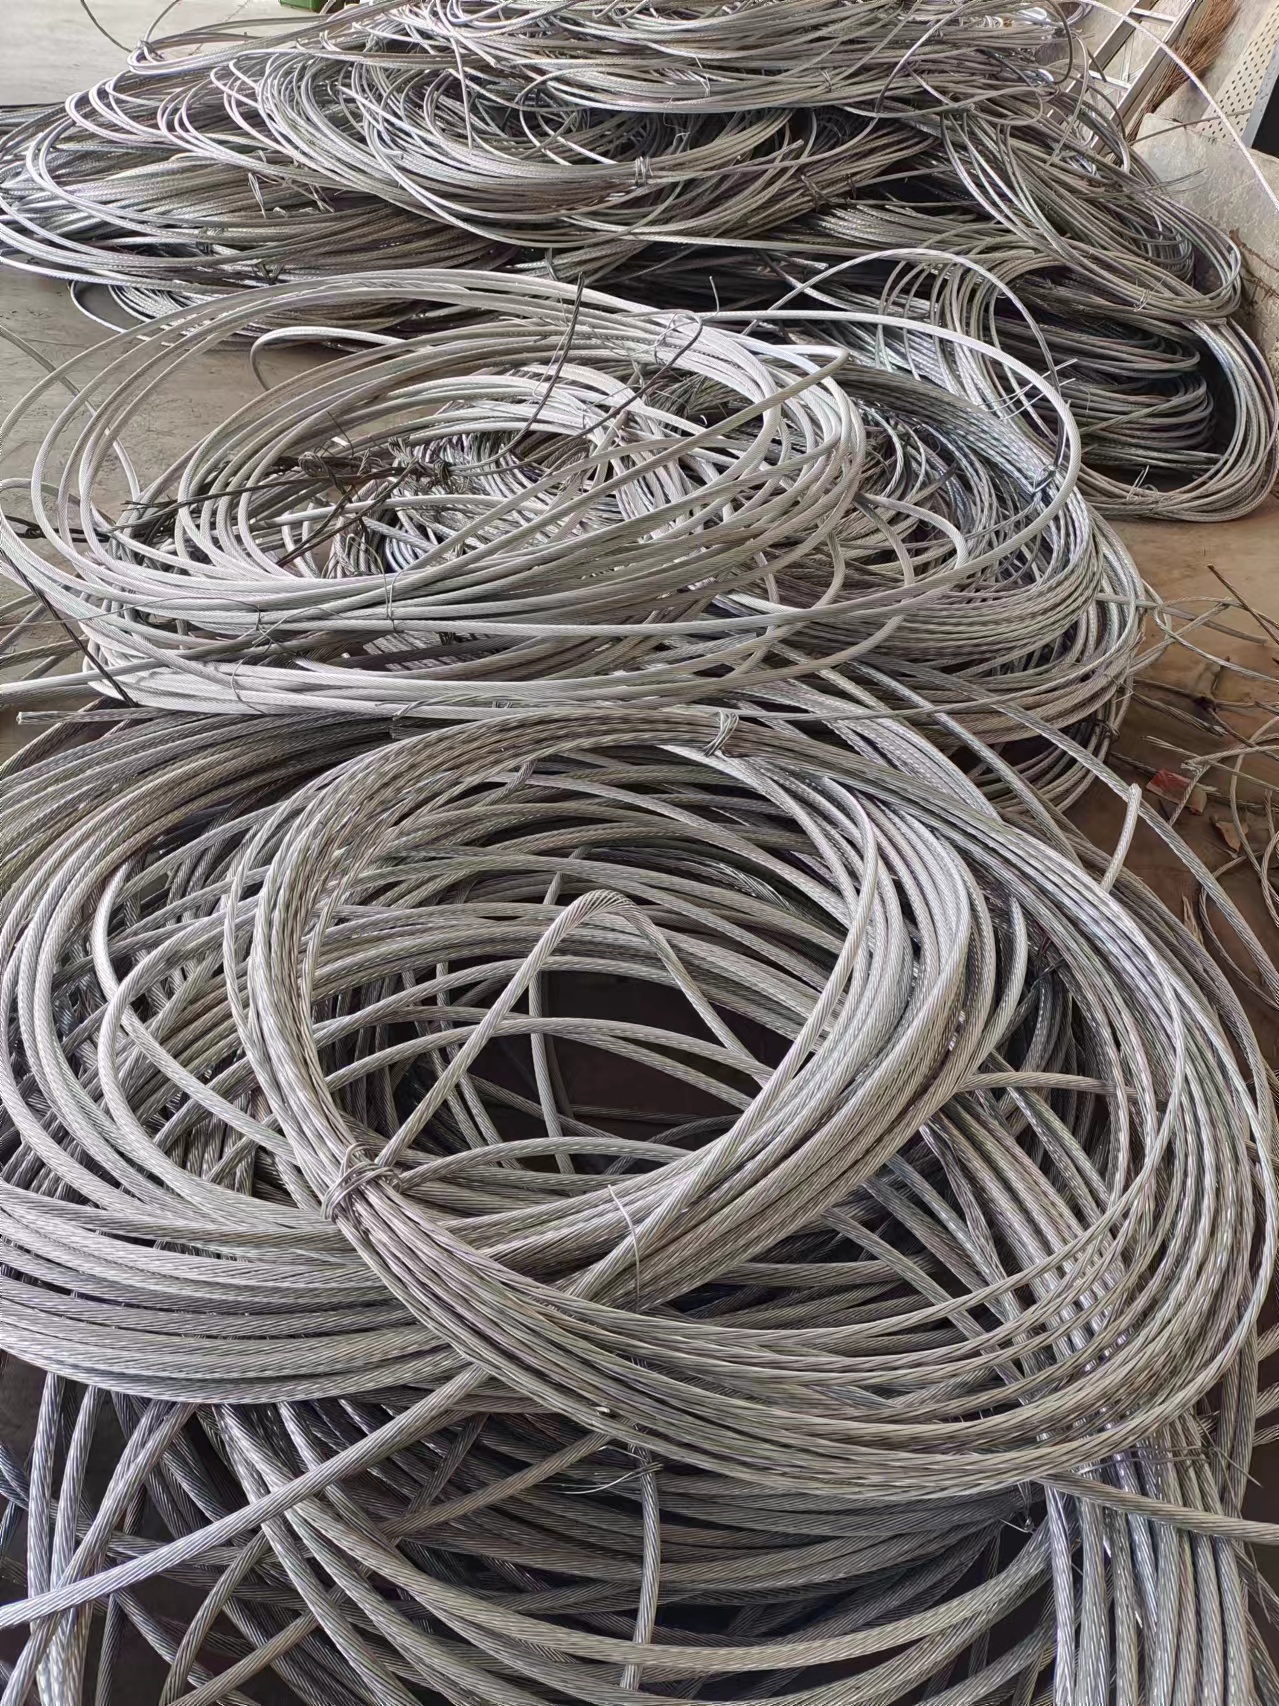 各种电线电缆回收 半成品电缆回收长期合作